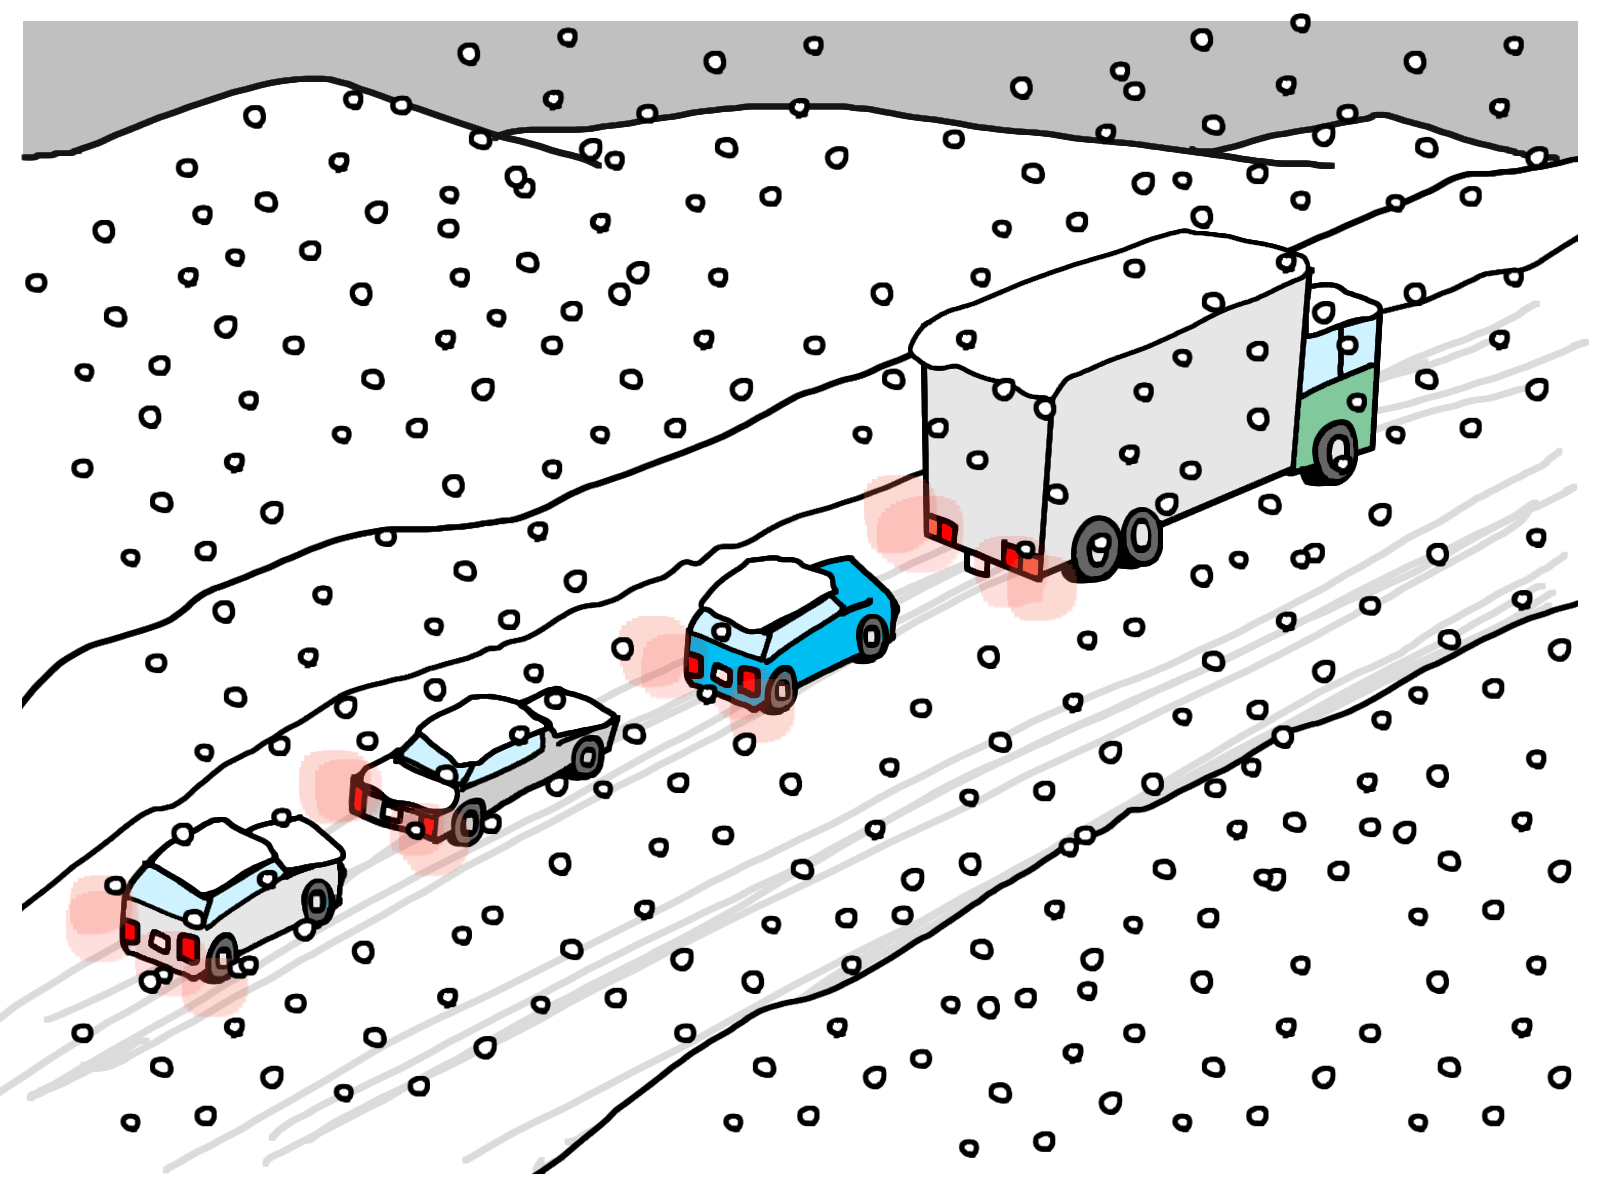 降雪による作業員の訪問・配送業務への影響について